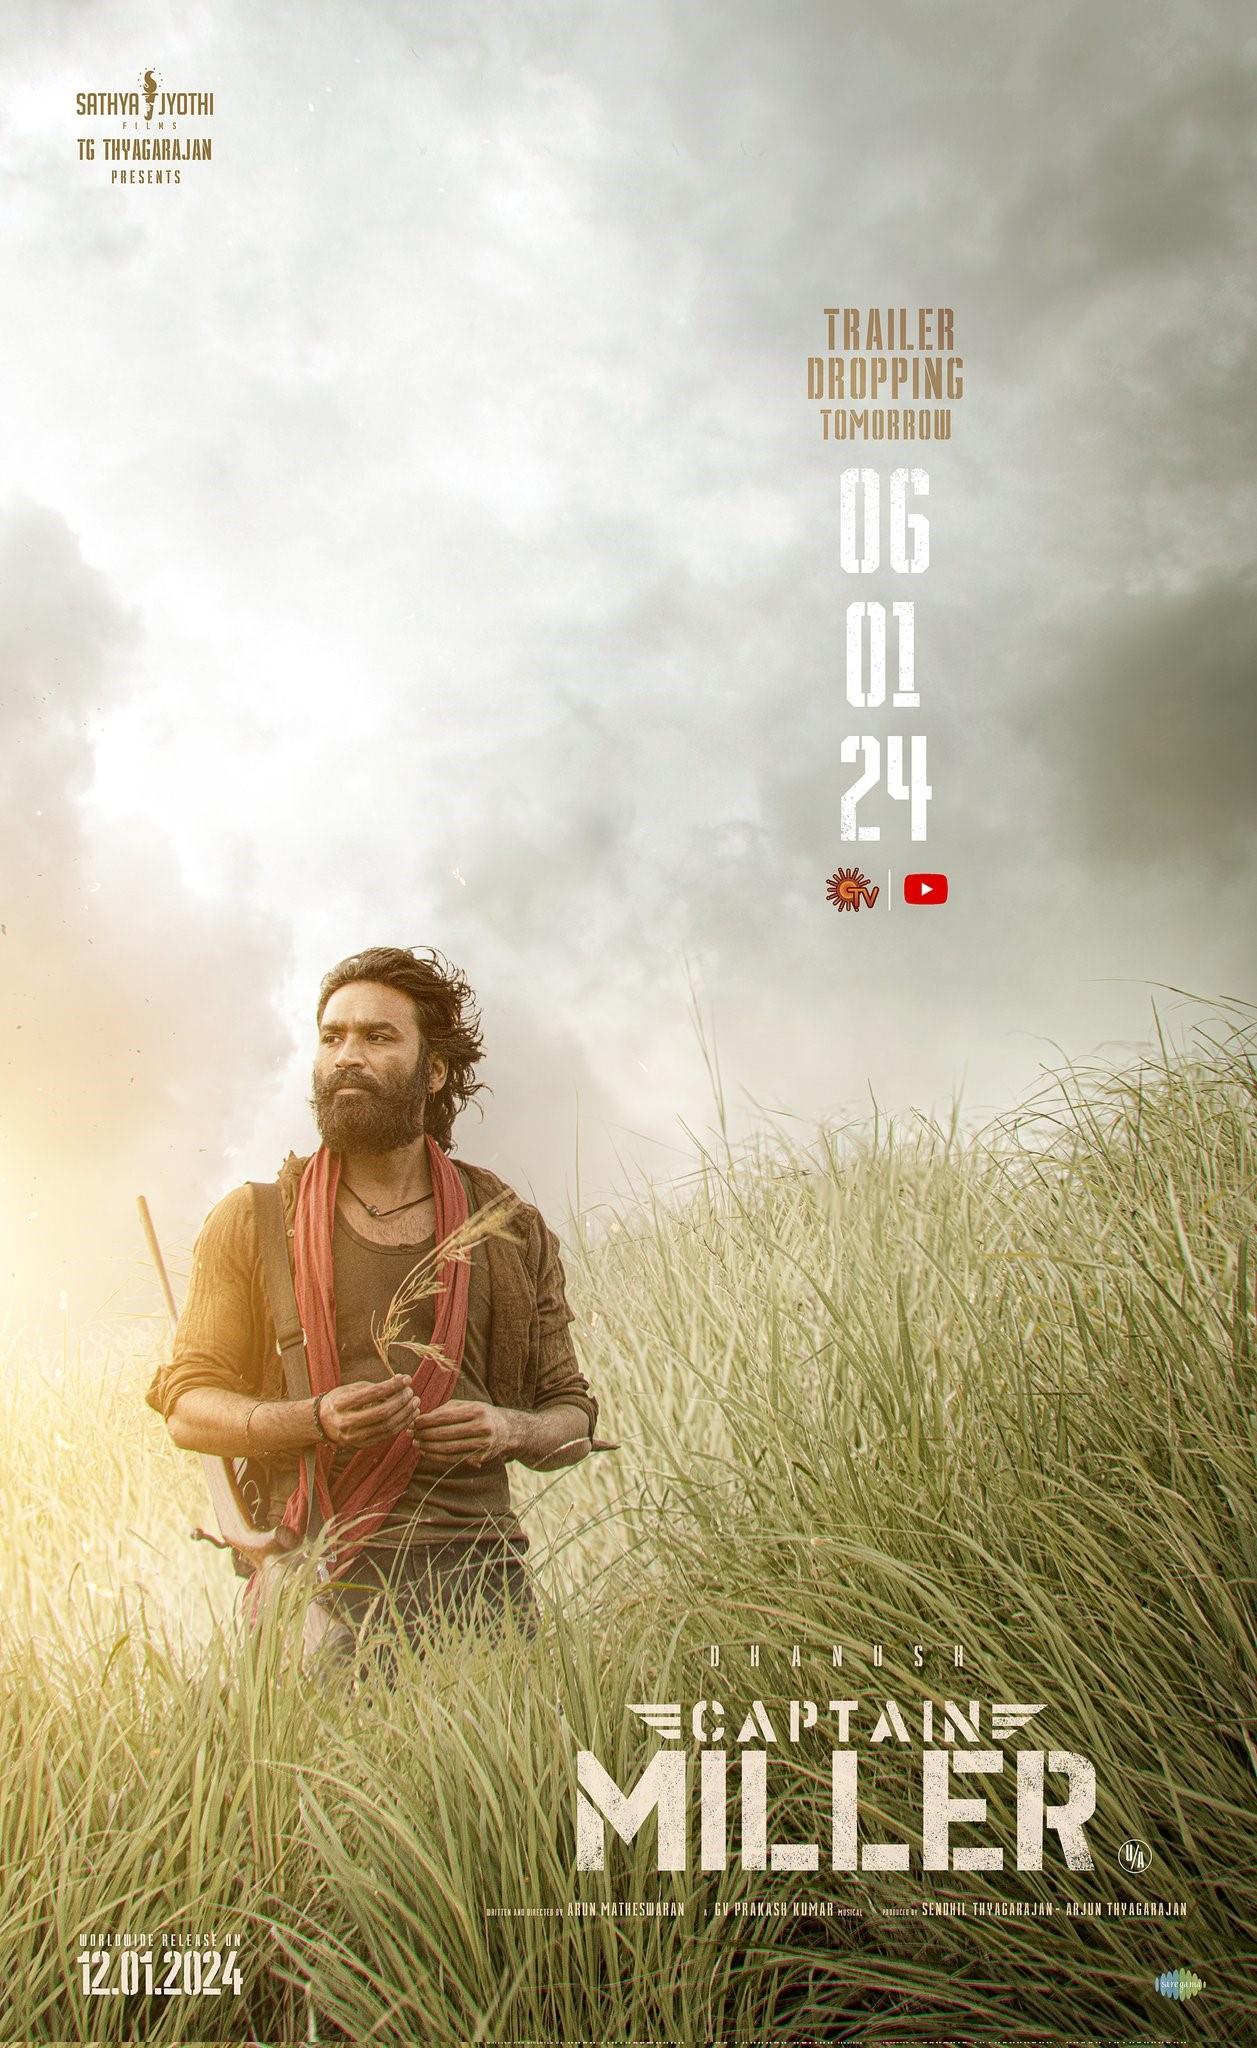 Captain Miller: Trailer release date of the Dhanush starrer